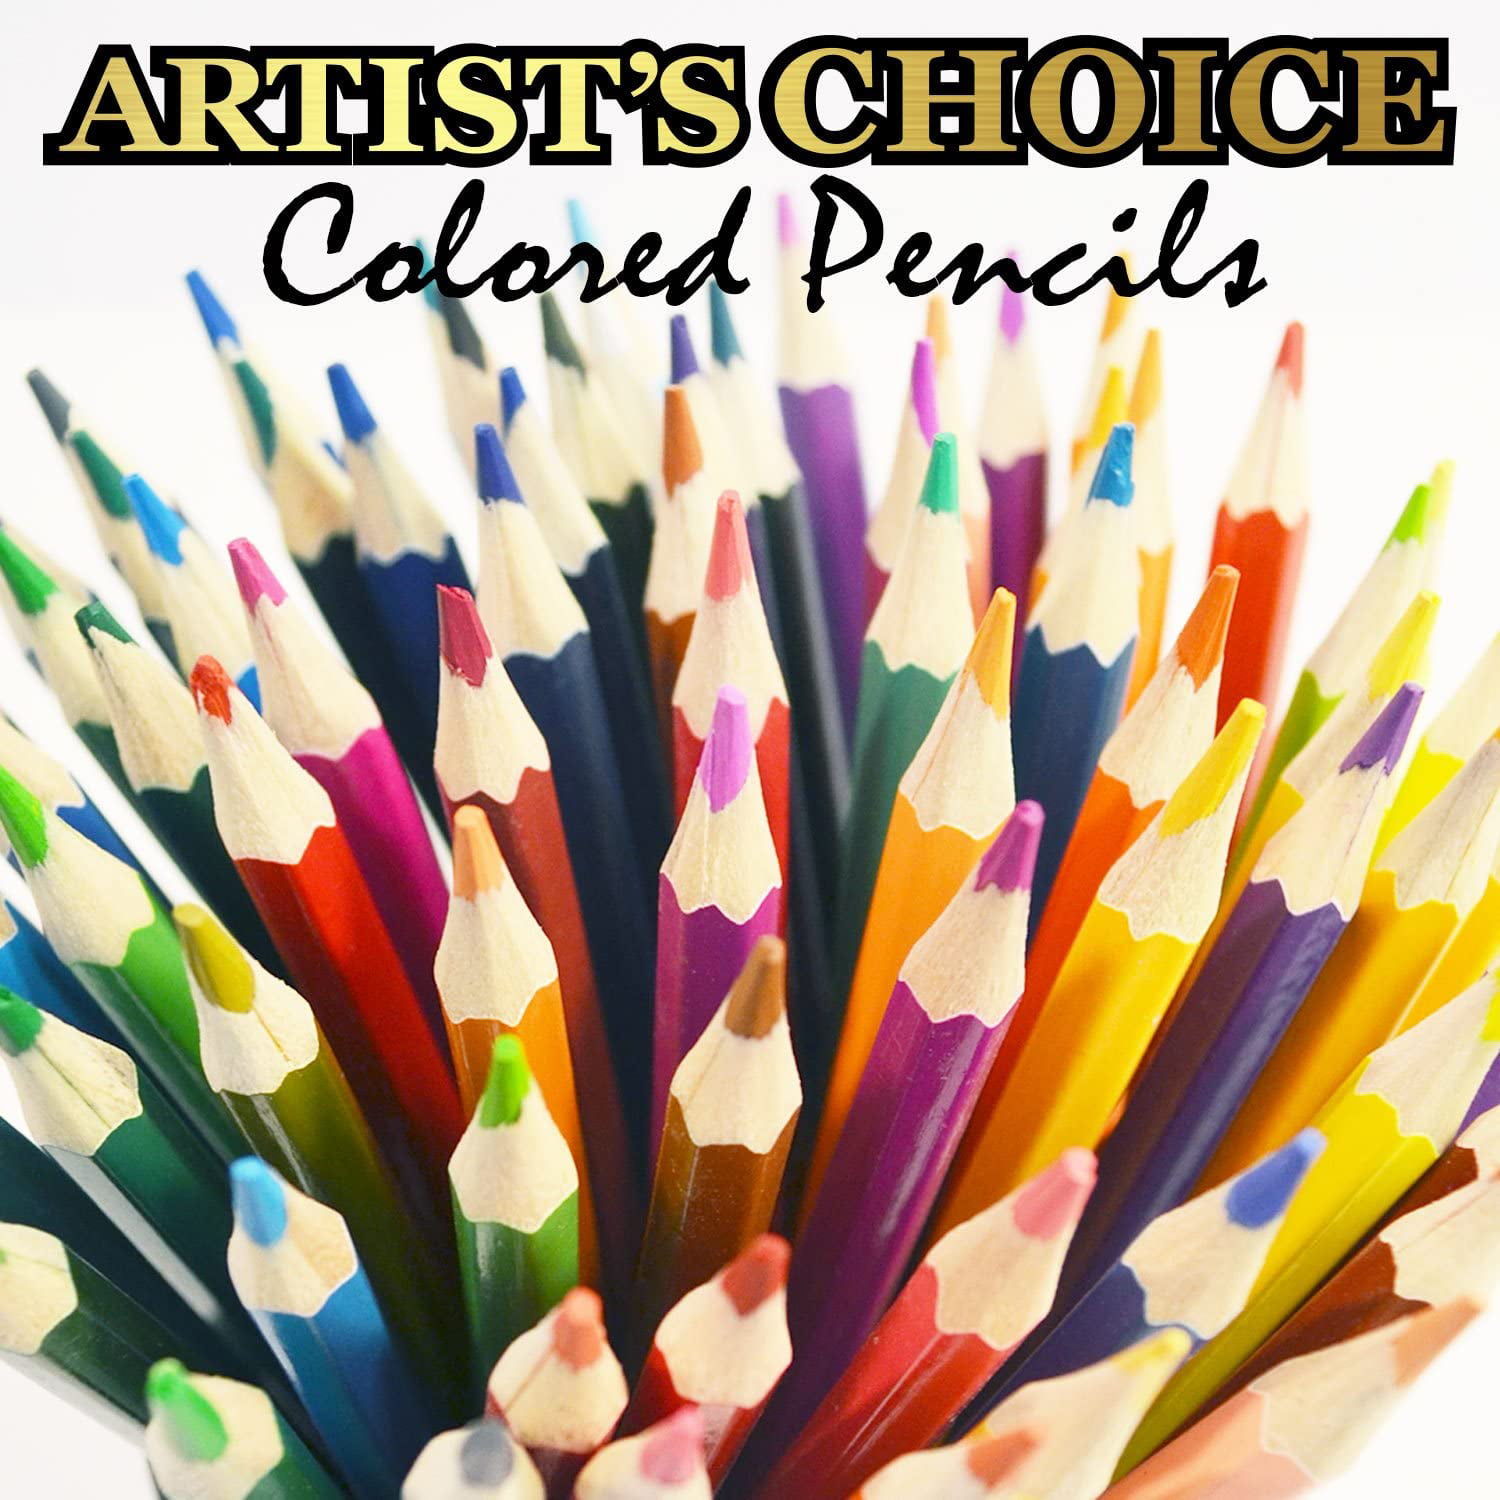 120 Colored Pencils - Premium Soft Core 120 Unique Colors No